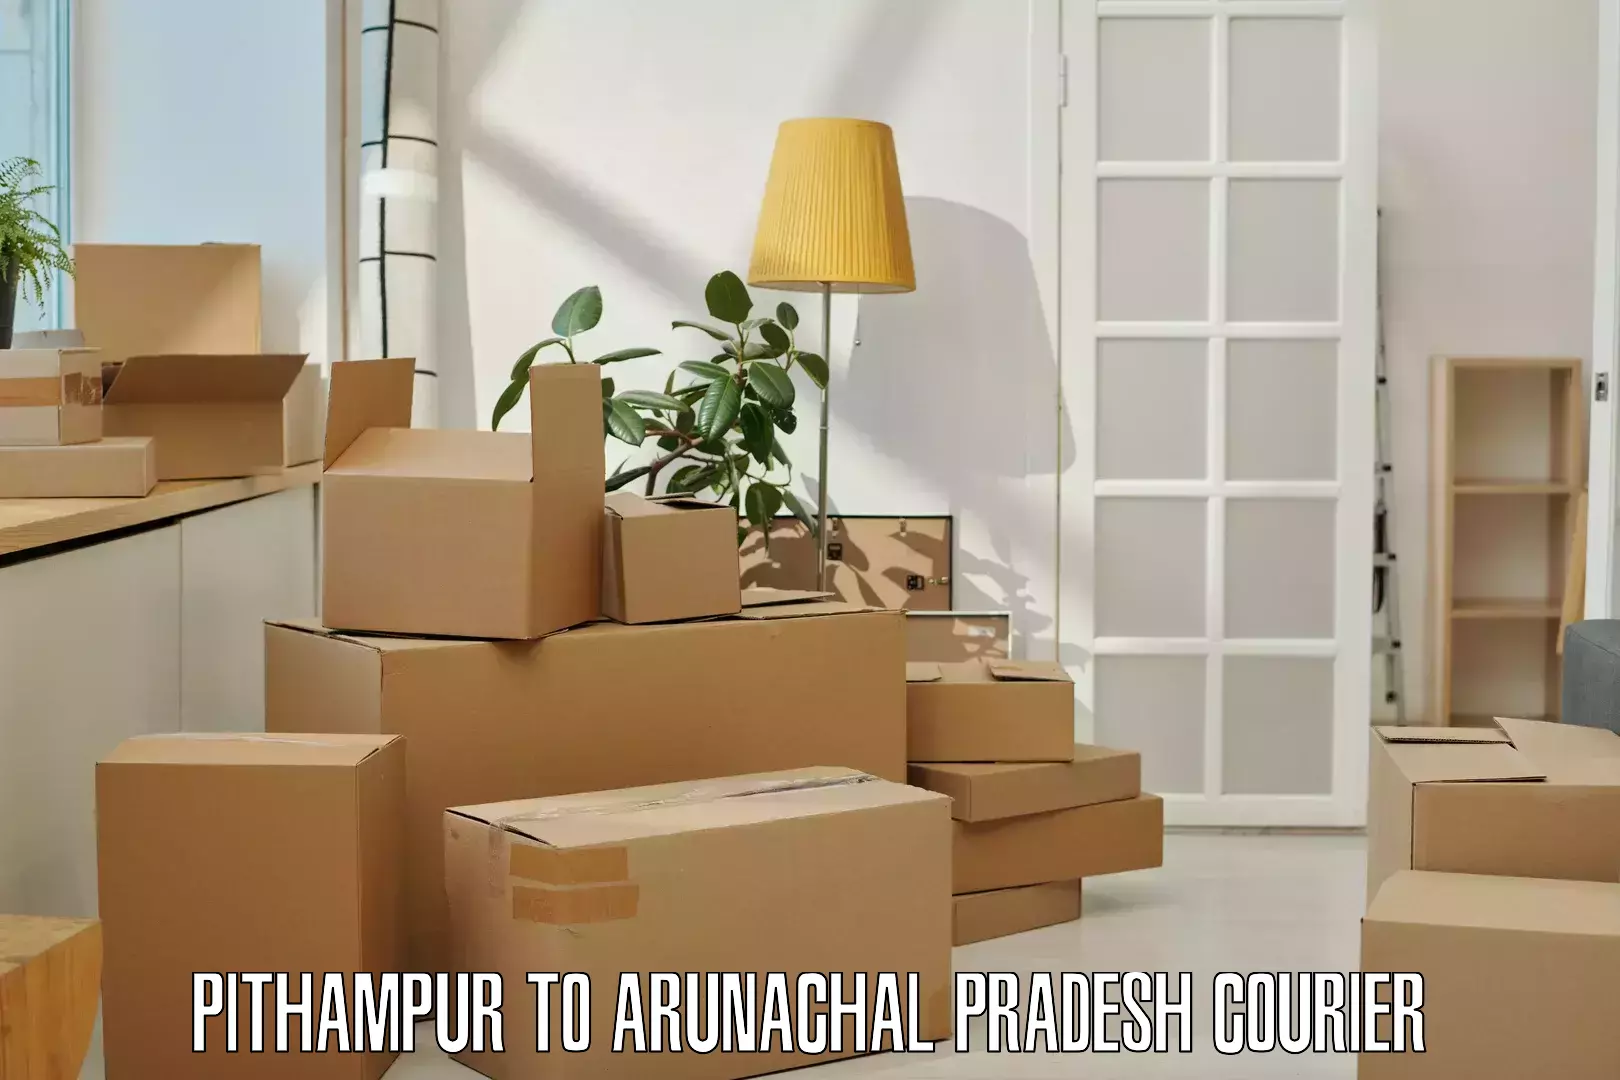 Expedited shipping methods Pithampur to Arunachal Pradesh